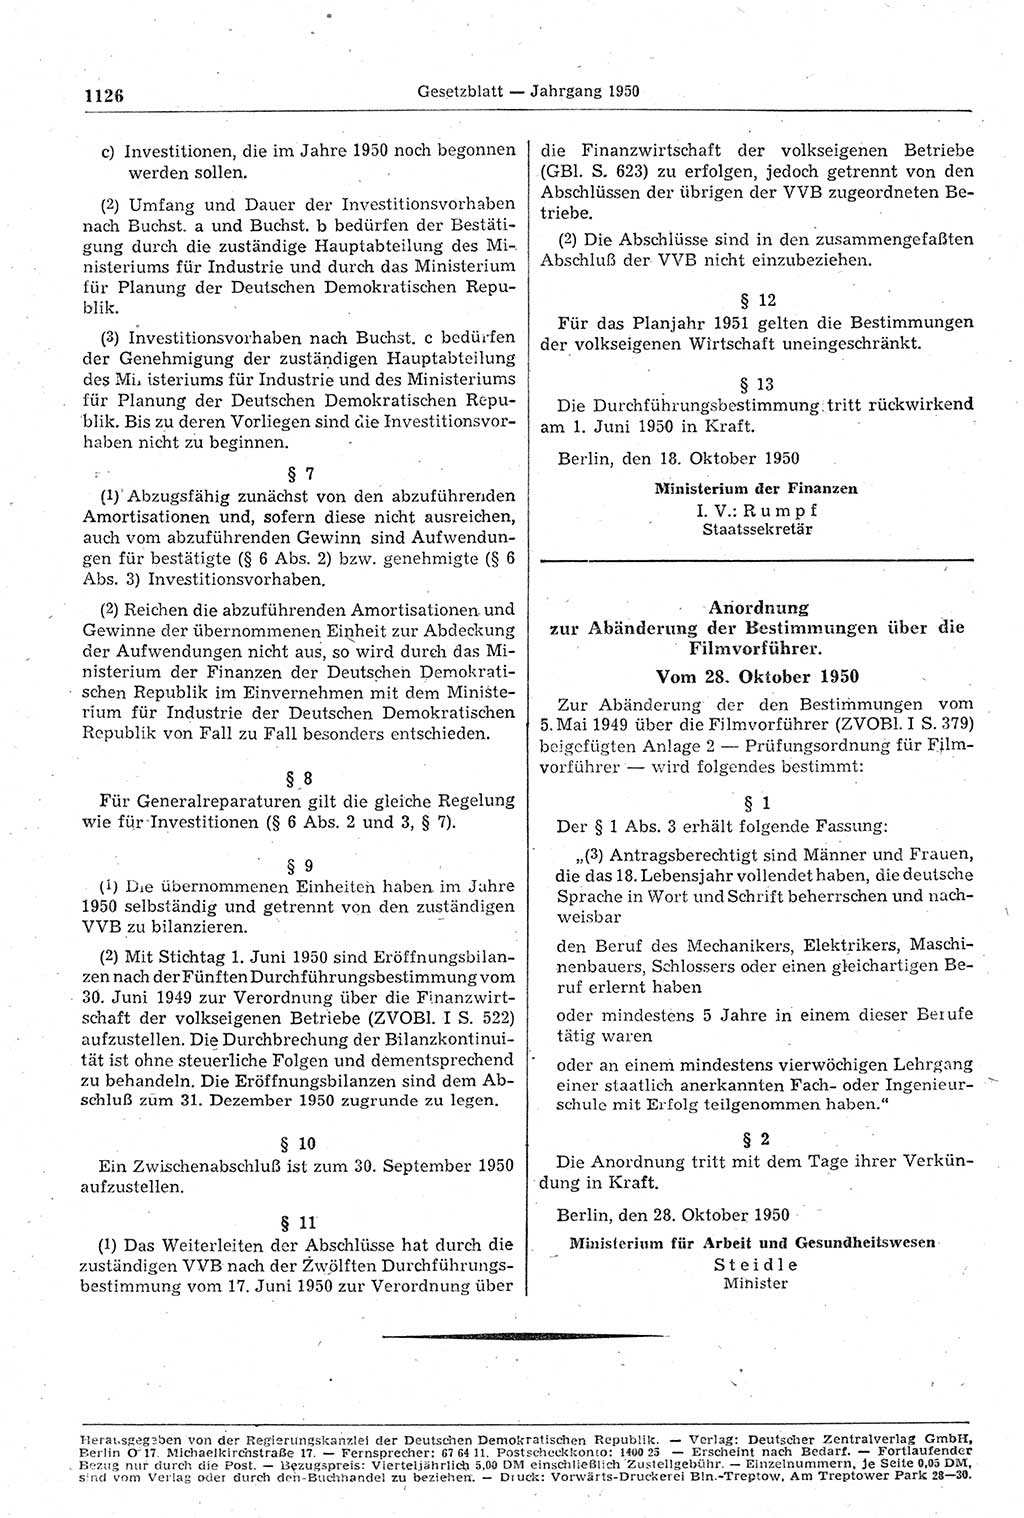 Gesetzblatt (GBl.) der Deutschen Demokratischen Republik (DDR) 1950, Seite 1126 (GBl. DDR 1950, S. 1126)